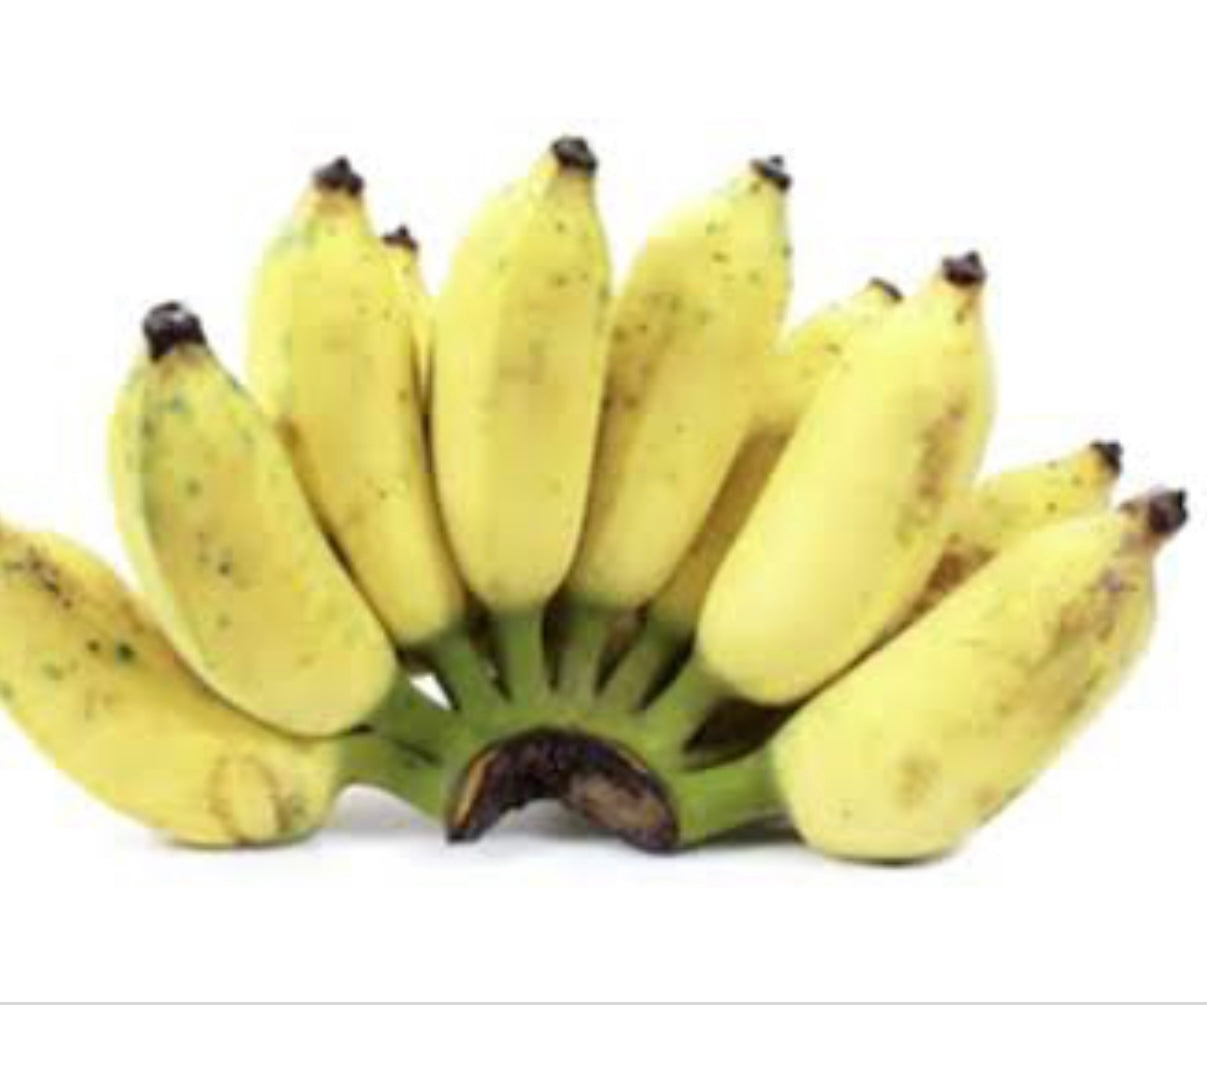 Banana - Duccase / Sugar Banana RESTRICTED TO SE QLD